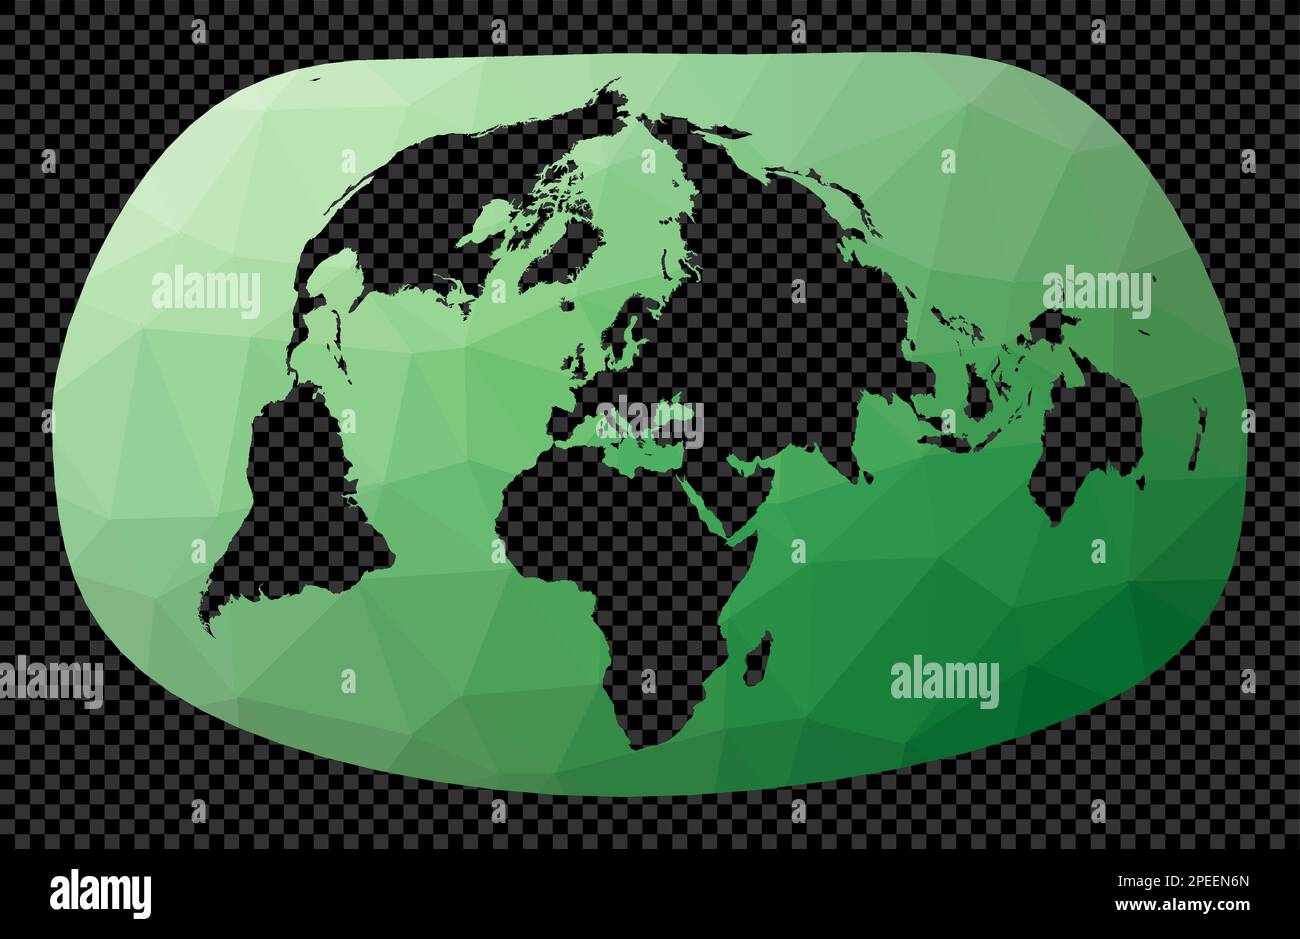 Niedrige Poly-Map der Welt. Bertin 1953-Projektion. Polygonale Weltkarte auf transparentem Hintergrund. Schablonenform geometrischer Globus. Charmanter vecto Stock Vektor